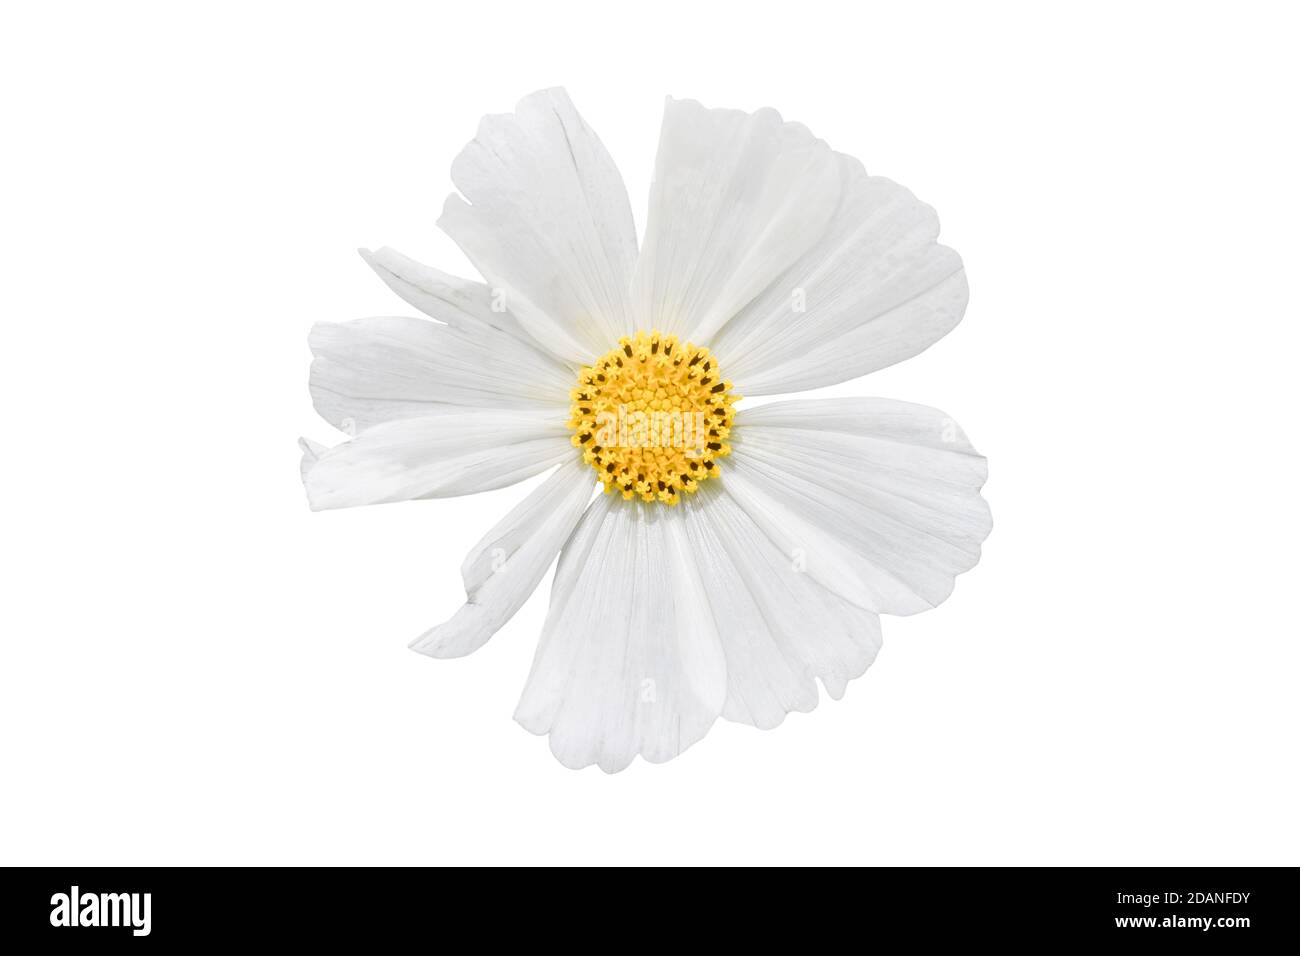 Weiße Cosmos Blume isoliert auf weißem Hintergrund. Dekorative schöne blühende Gartenpflanze Cosmos bipinnatus. Stockfoto